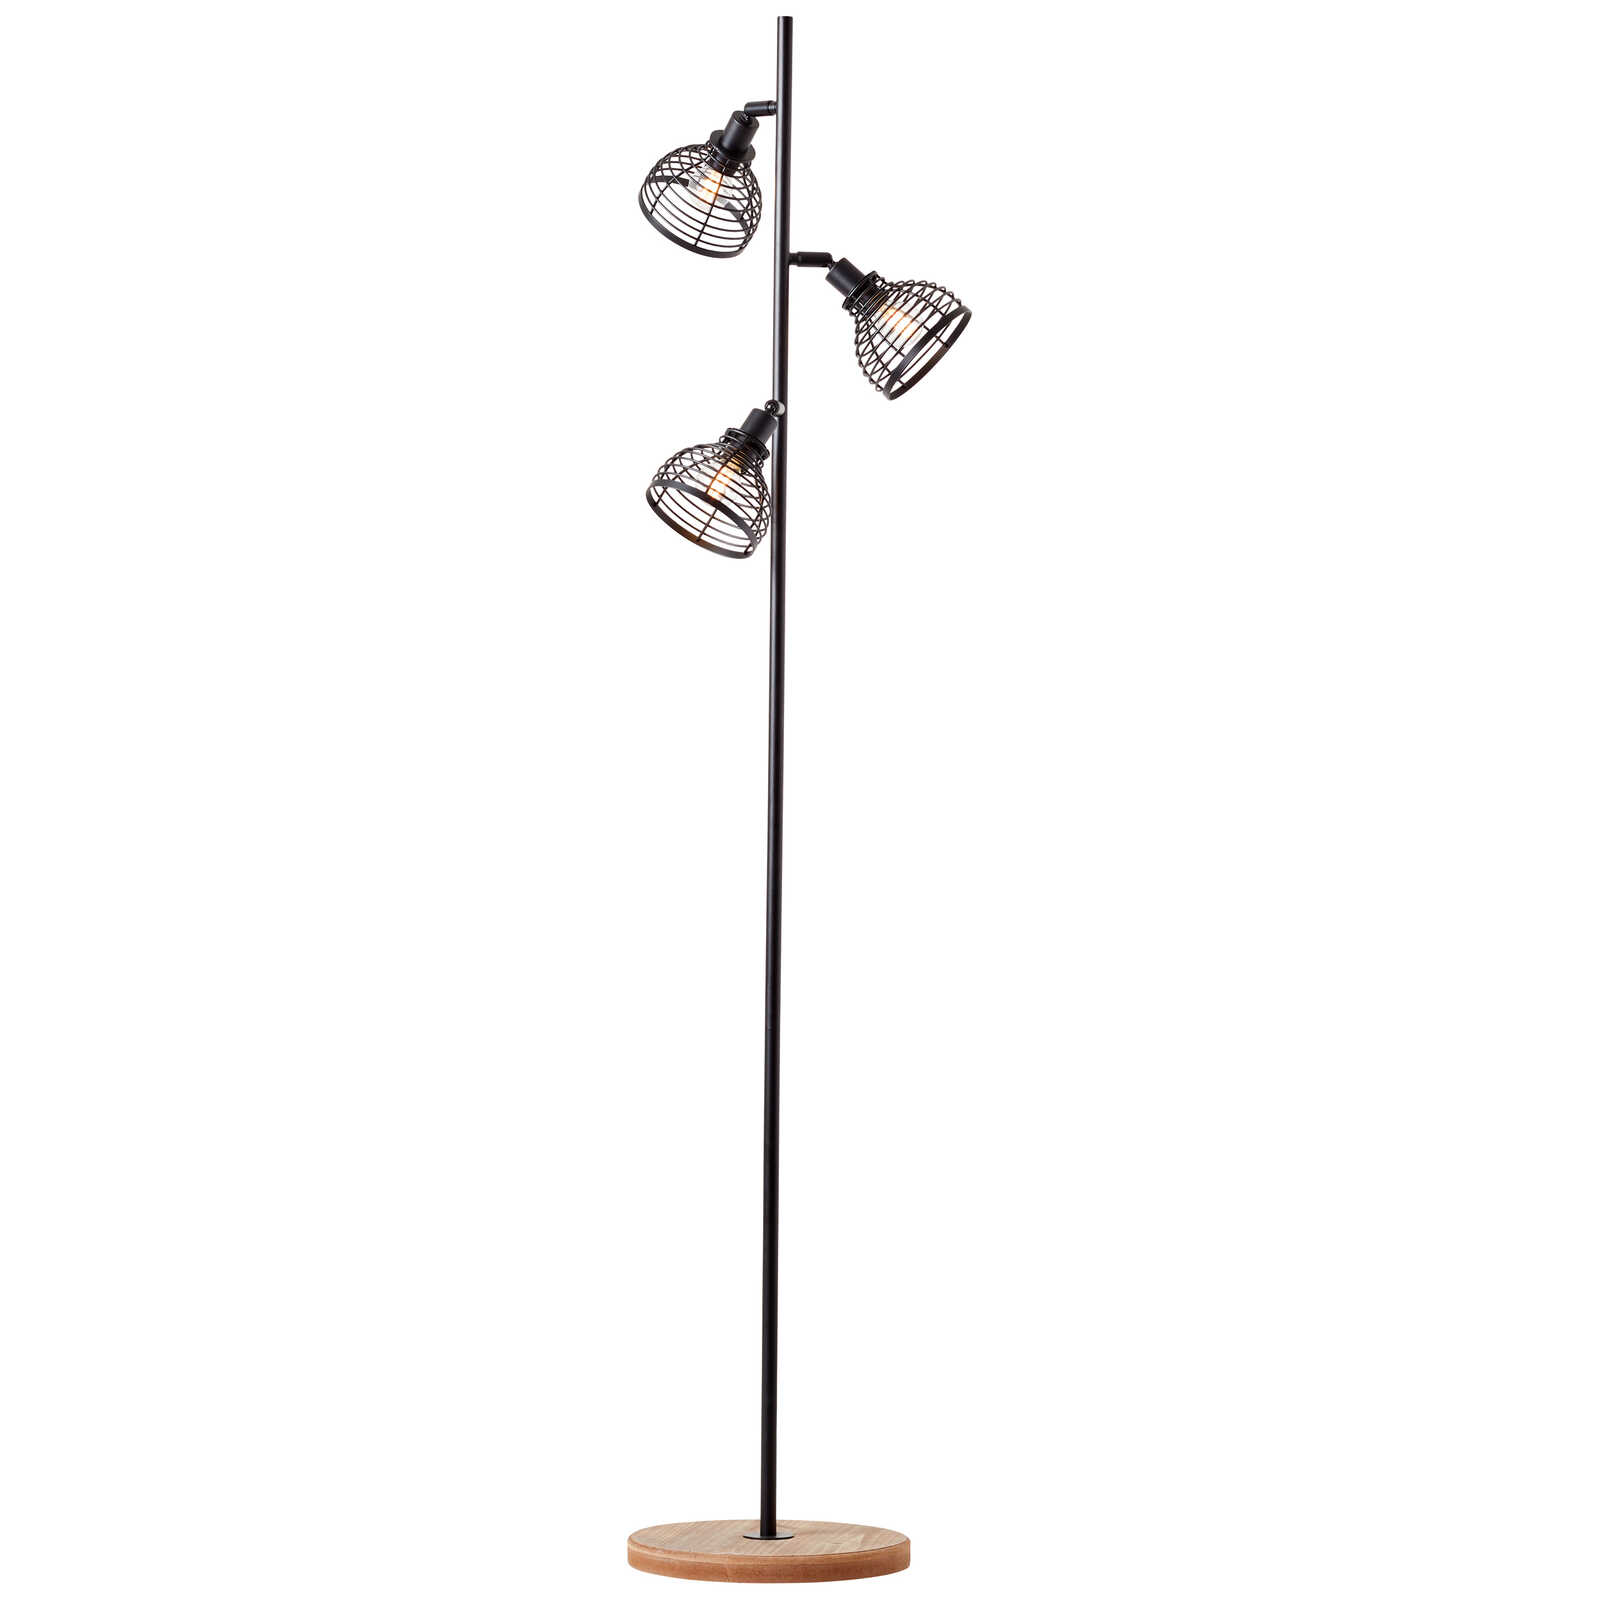             Lámpara de pie de madera - Annelie 7 - Marrón
        